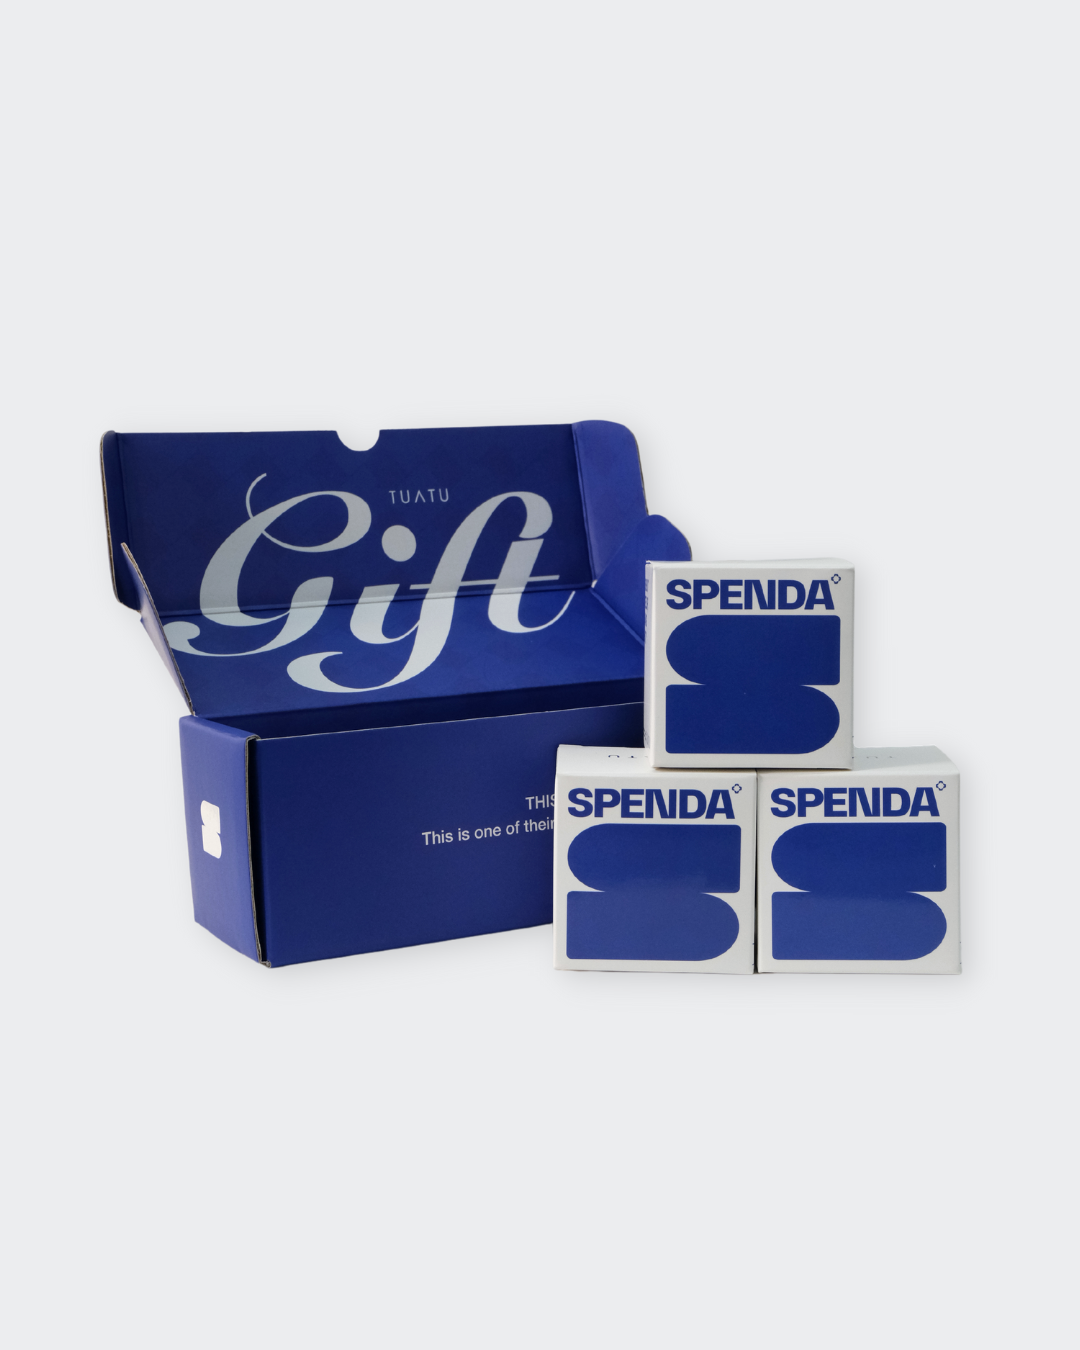 SPENDA GIFT Box